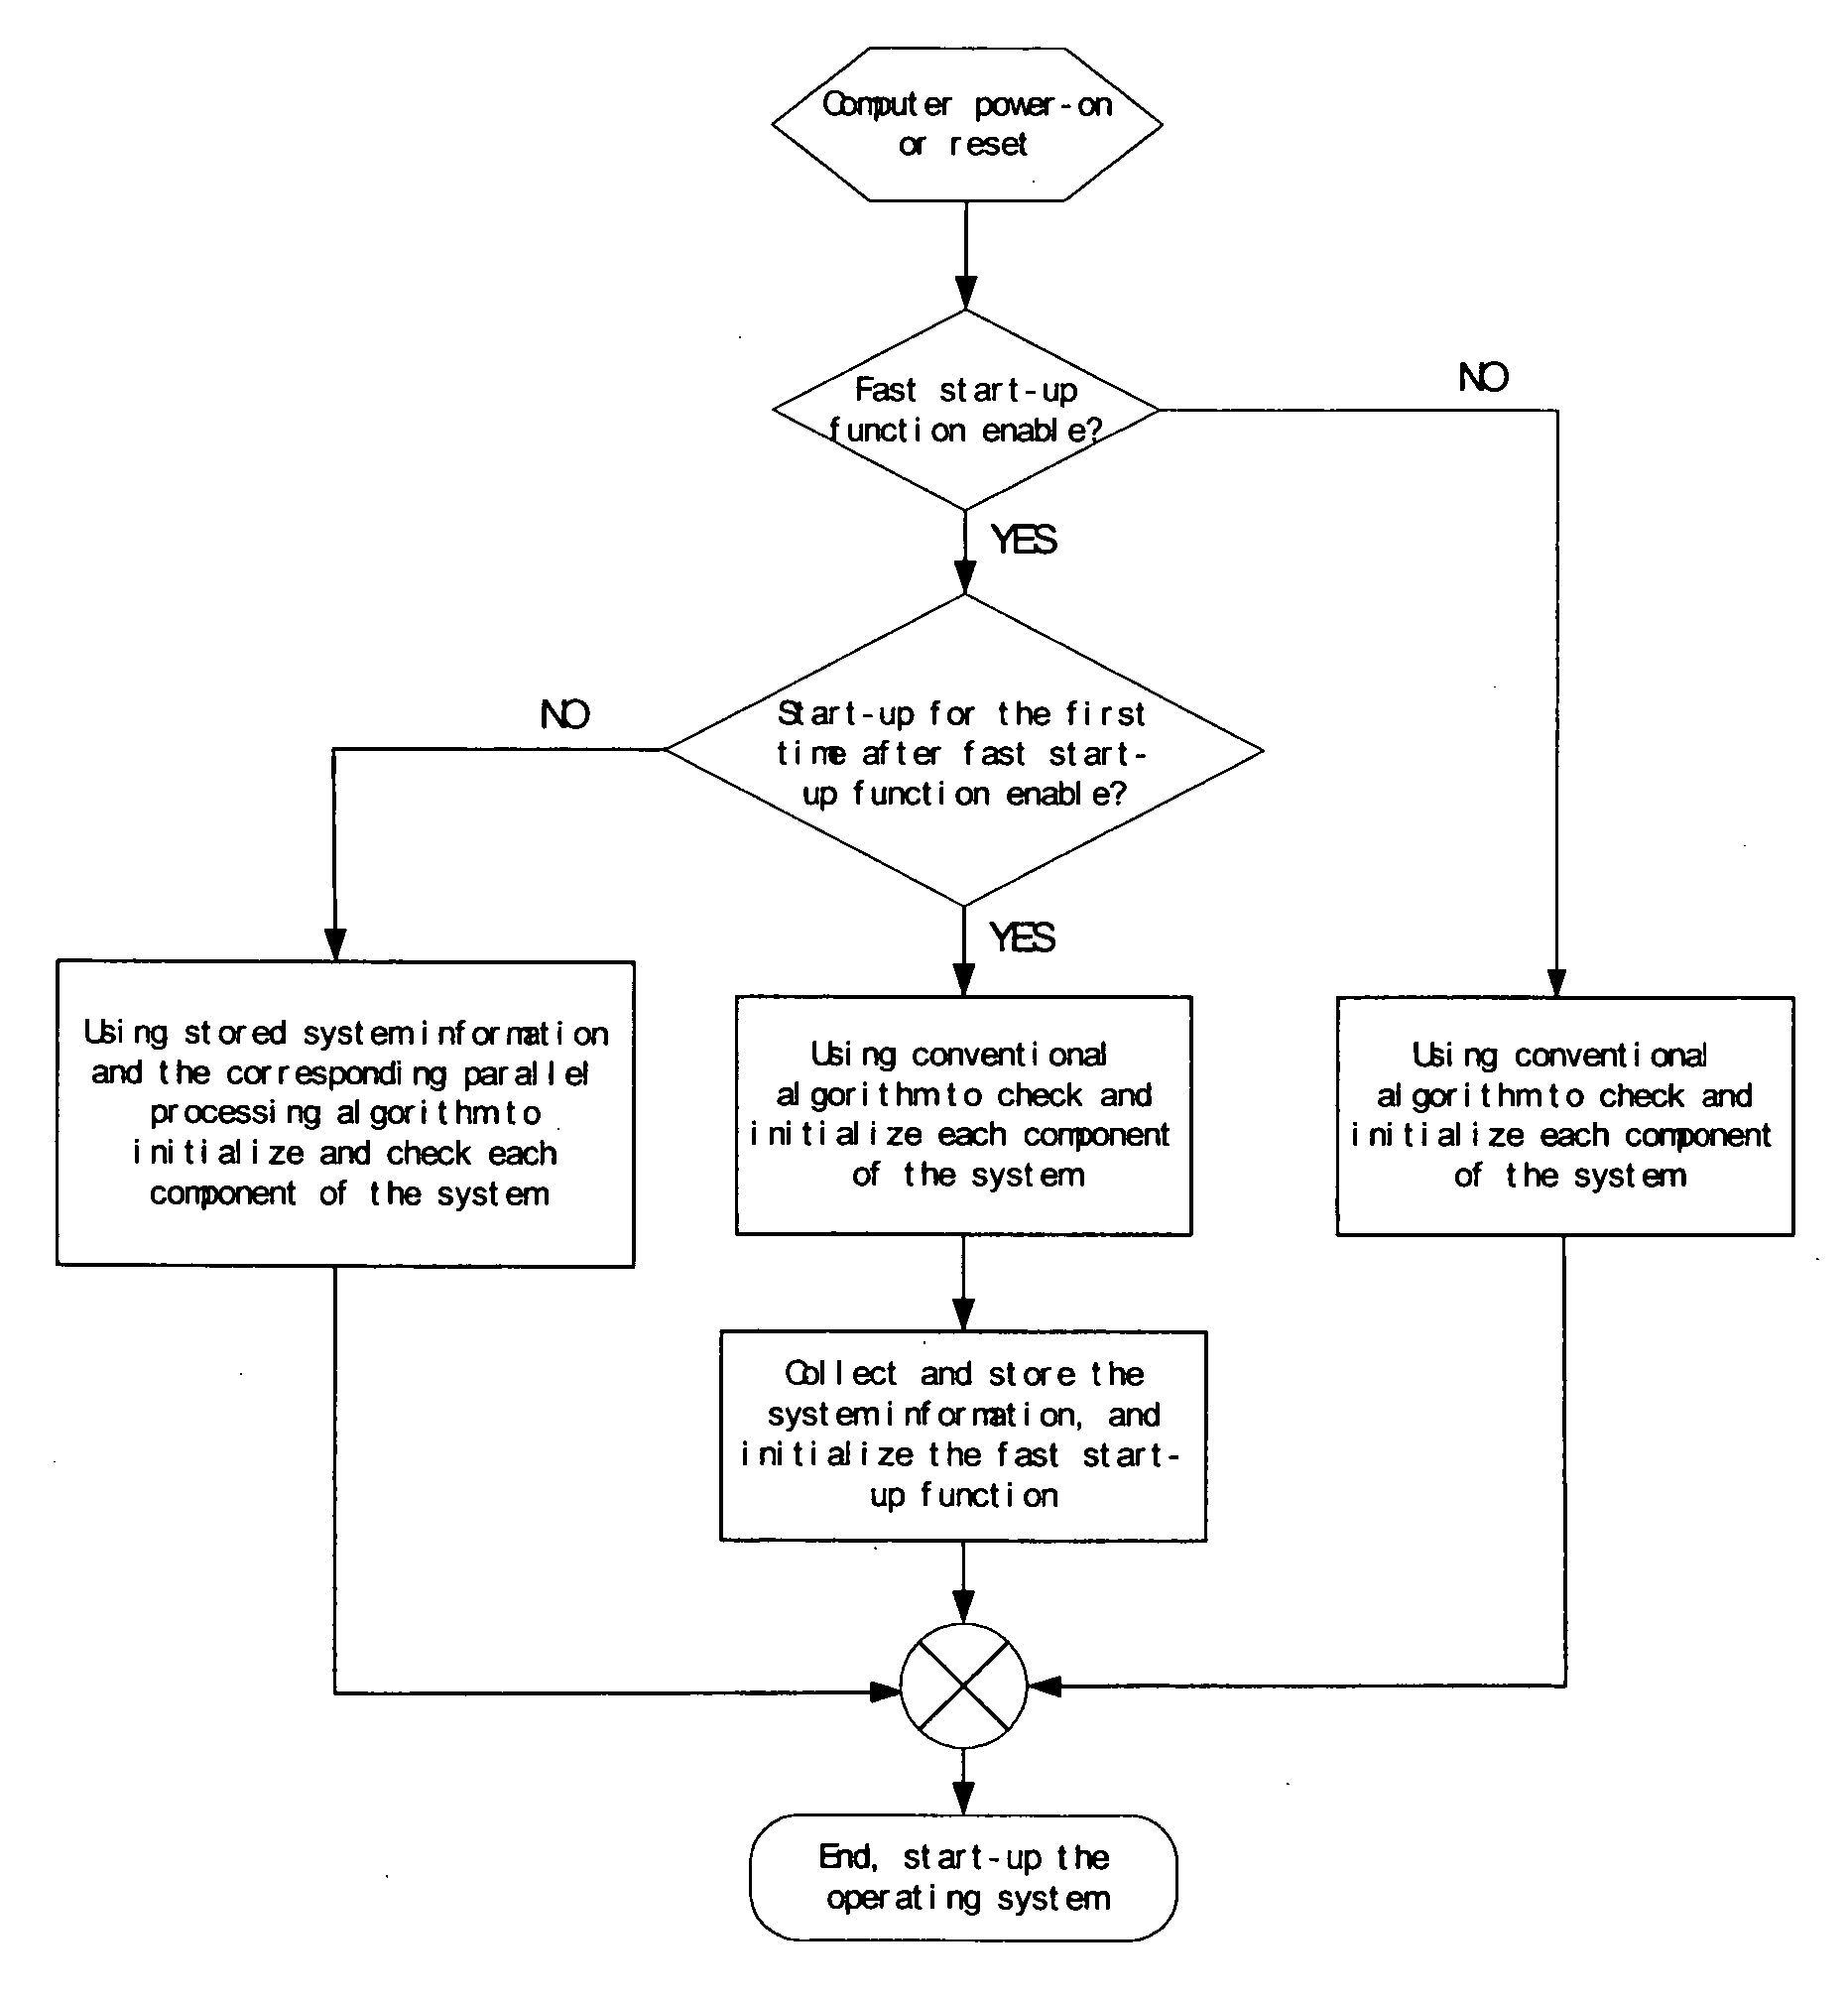 Method of computer rapid start-up